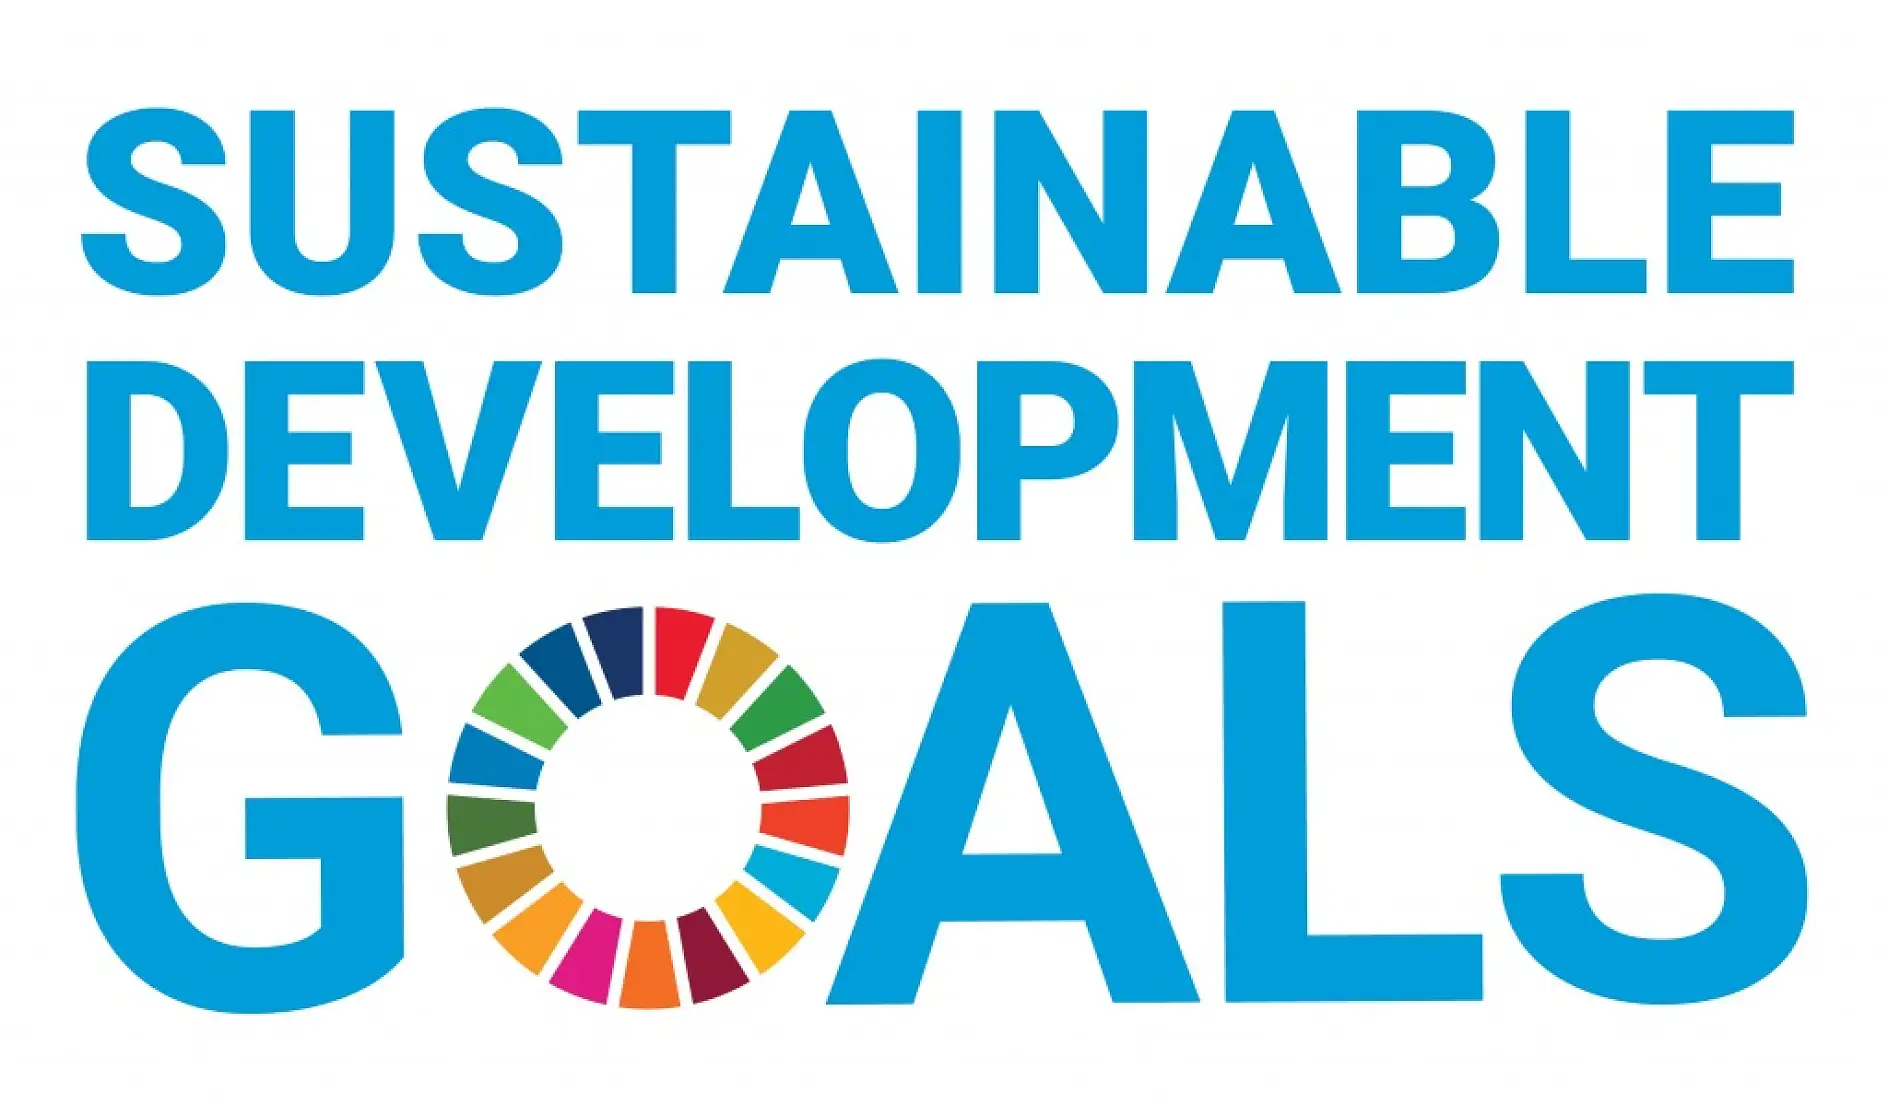 持続可能な開発目標(SDGs)達成に貢献します